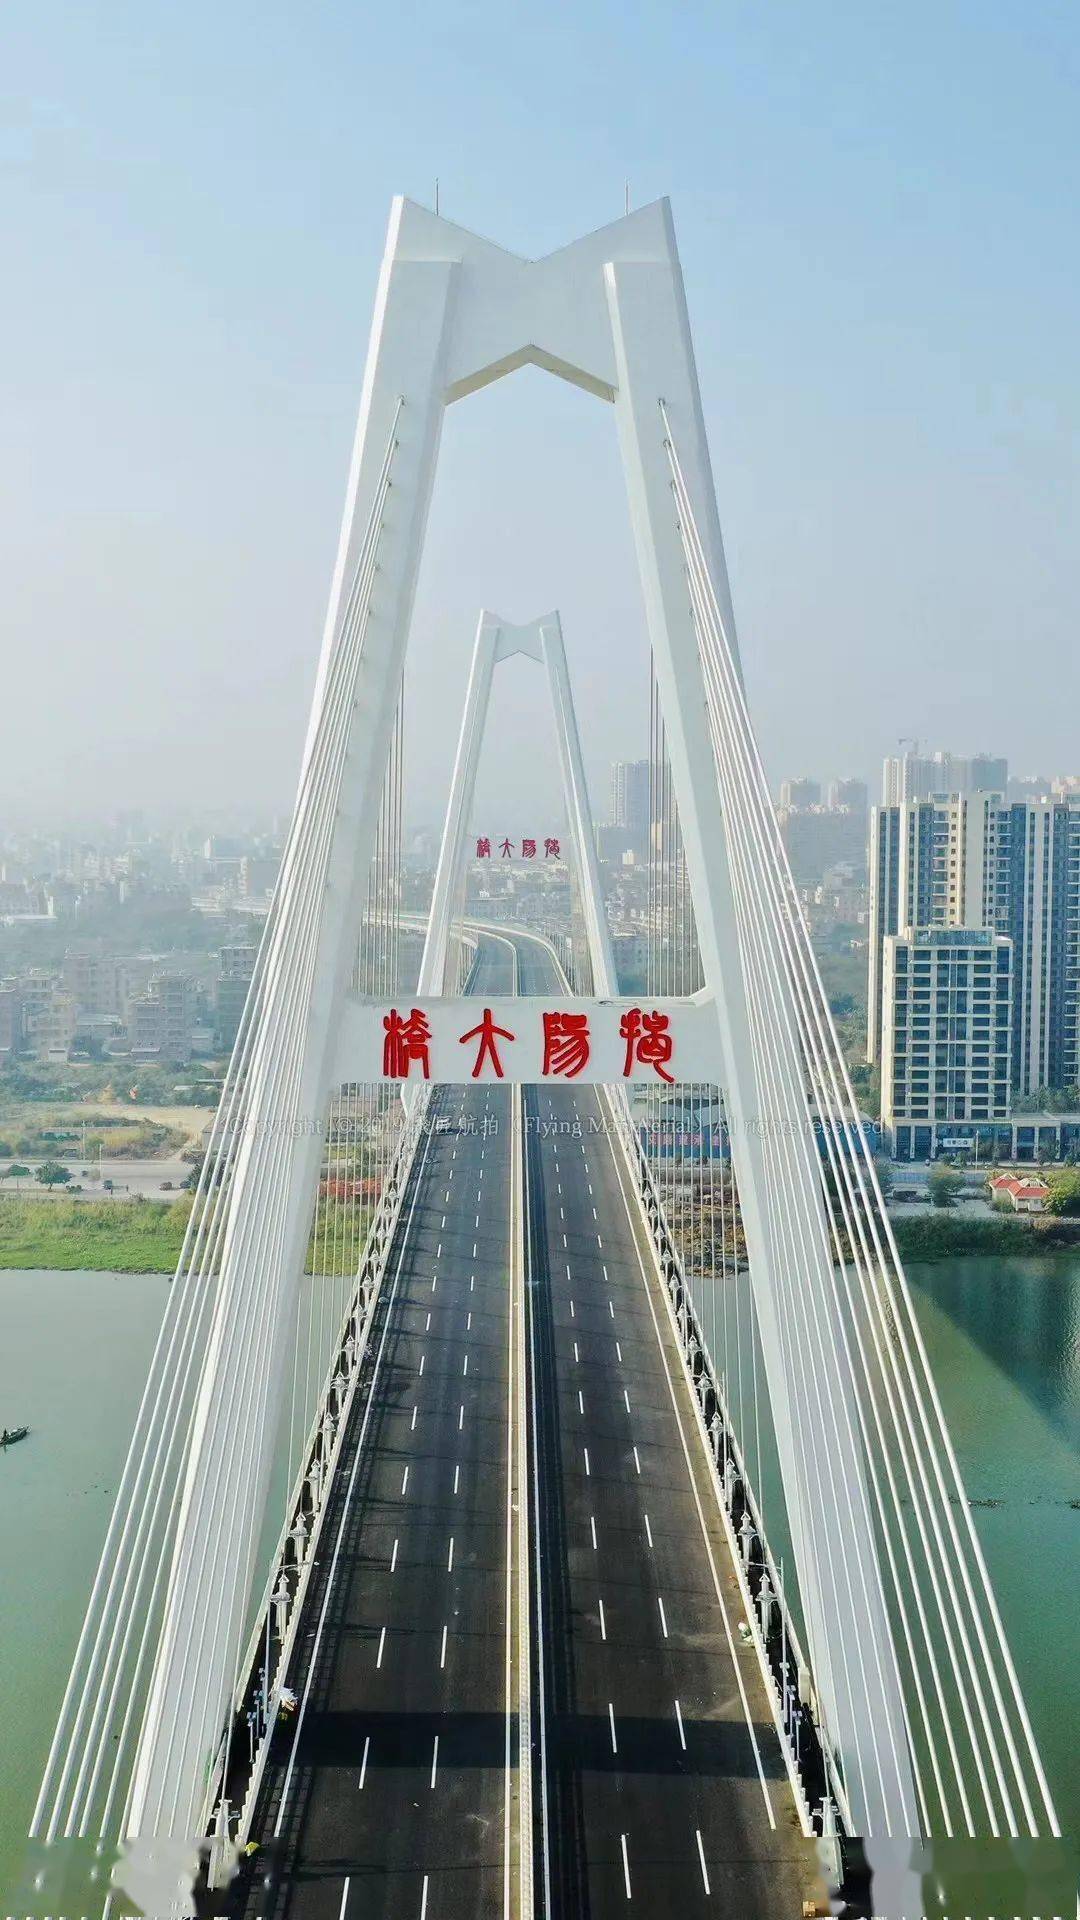 揭阳大桥,终以壮丽身姿,横跨于榕江南河之上,成为揭阳新地标!